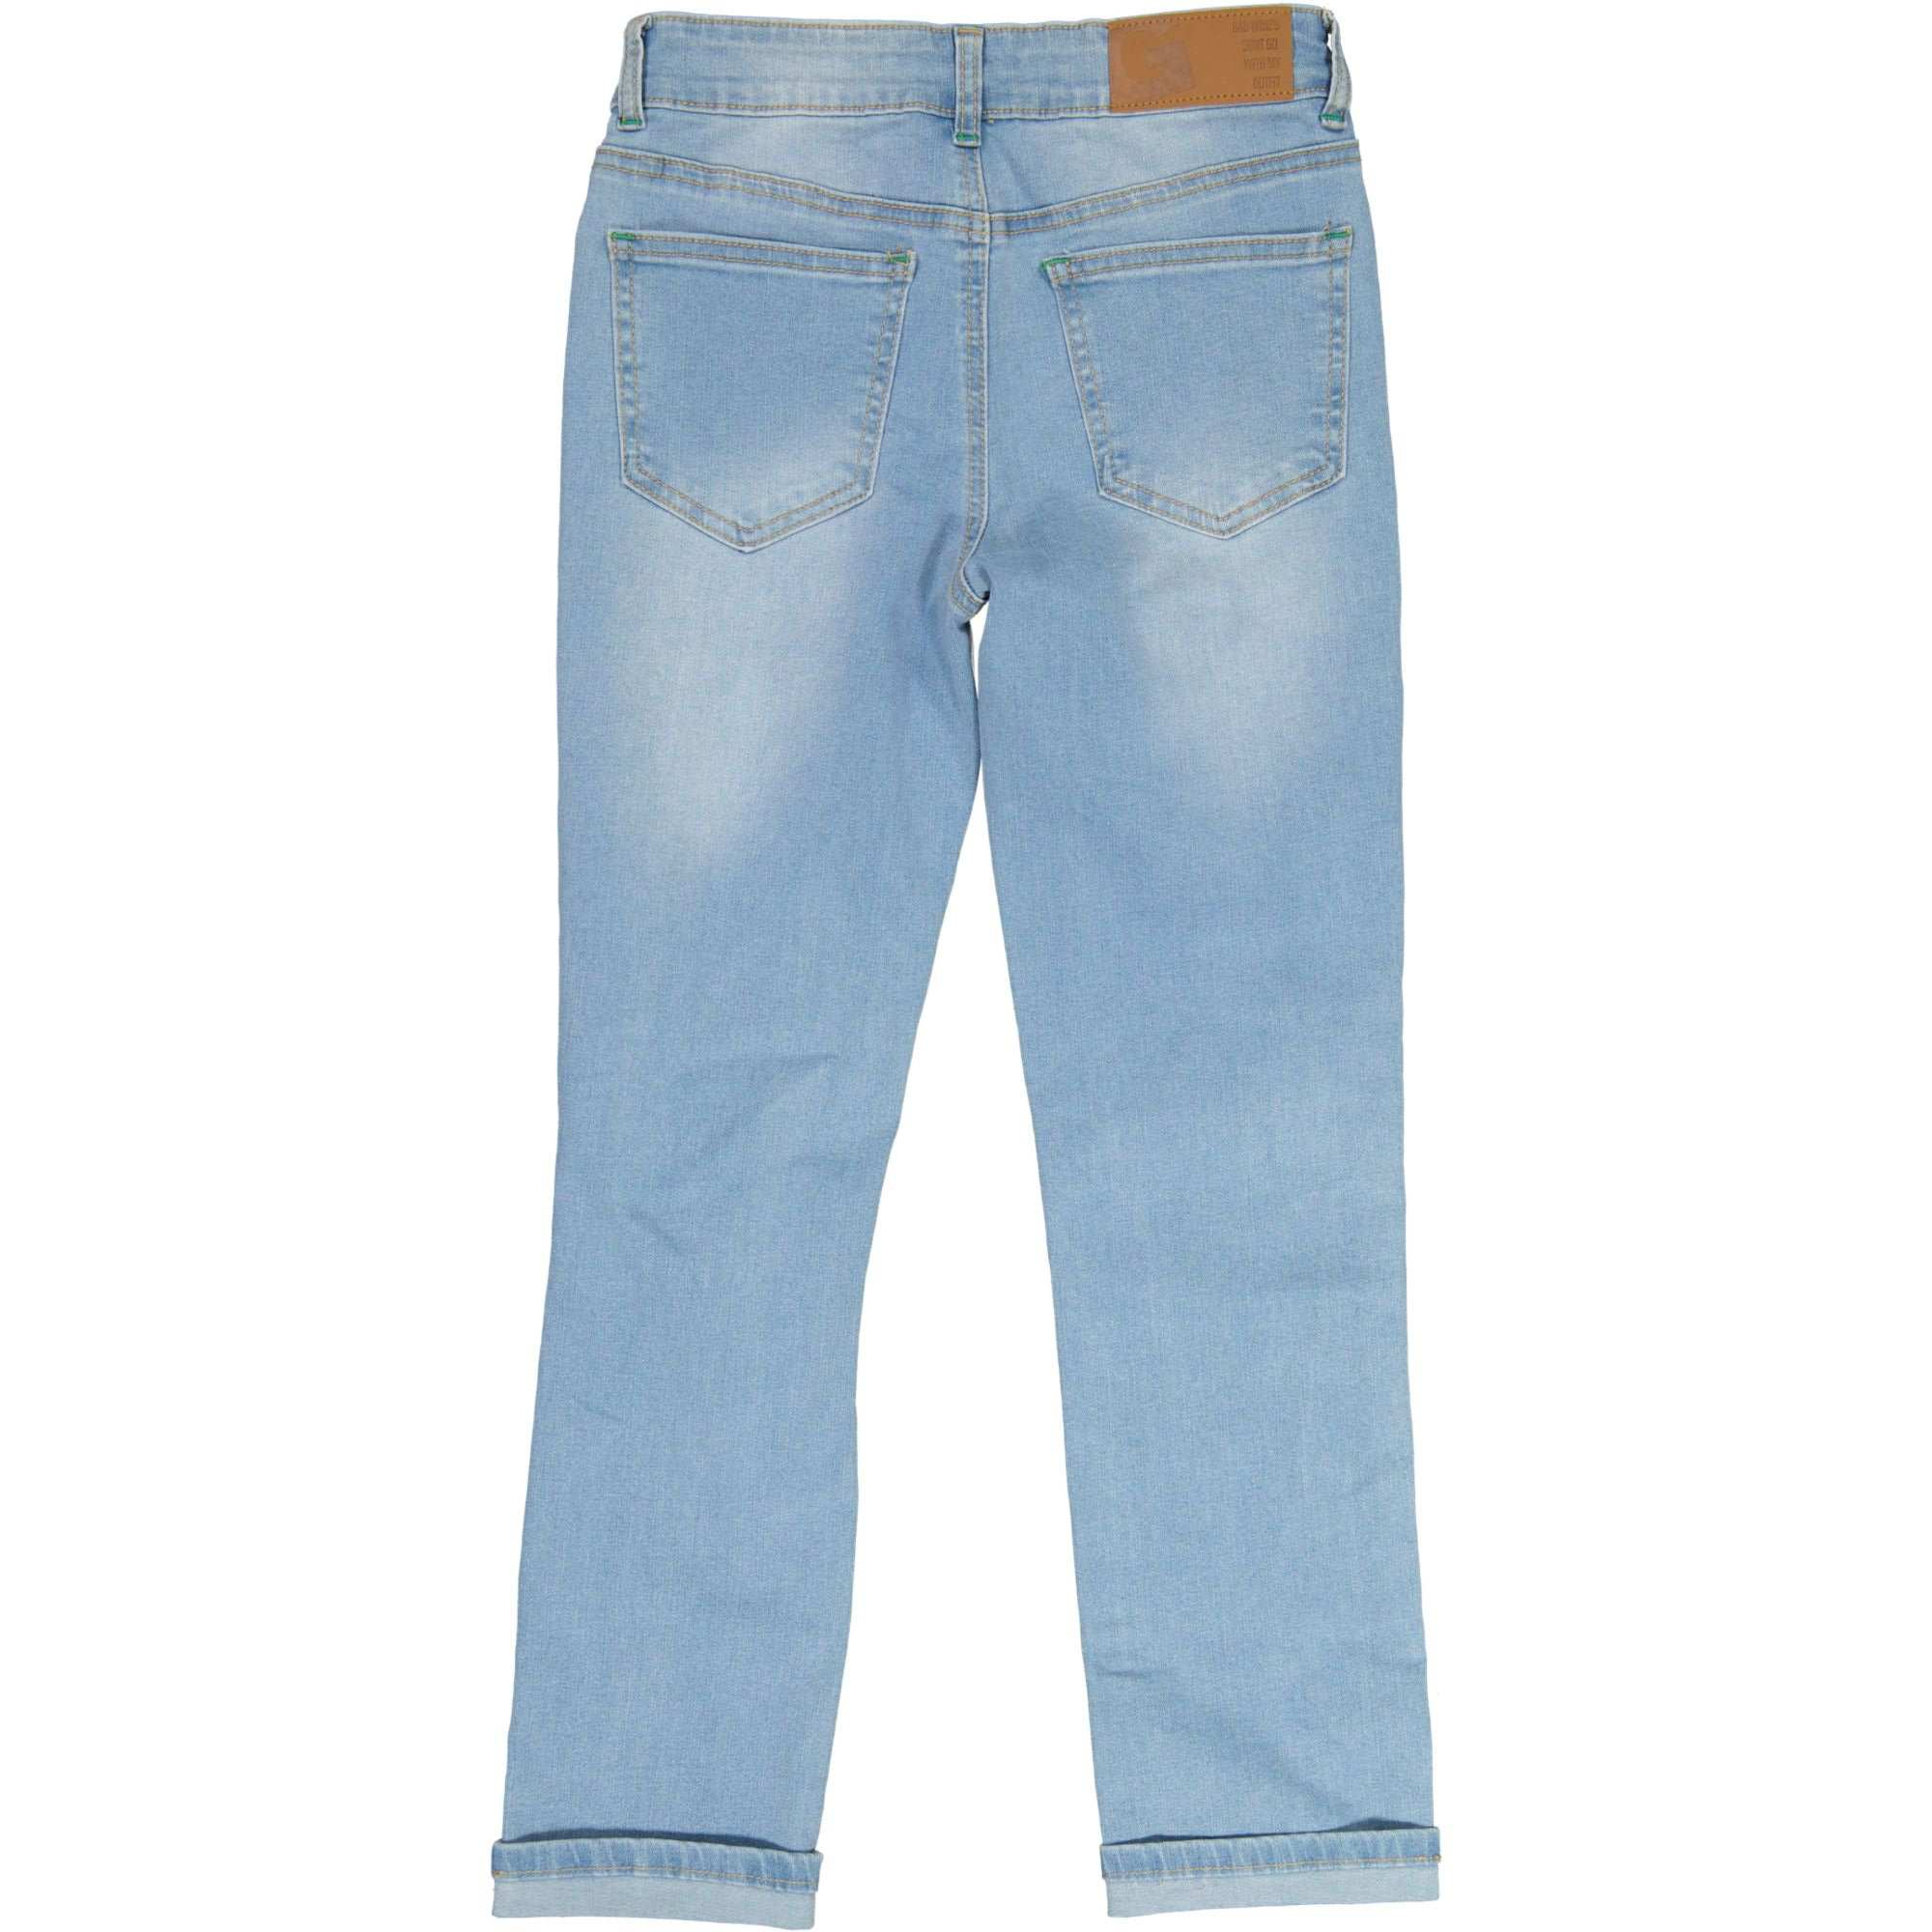 Unisex loose fit jeans Denim blue wash